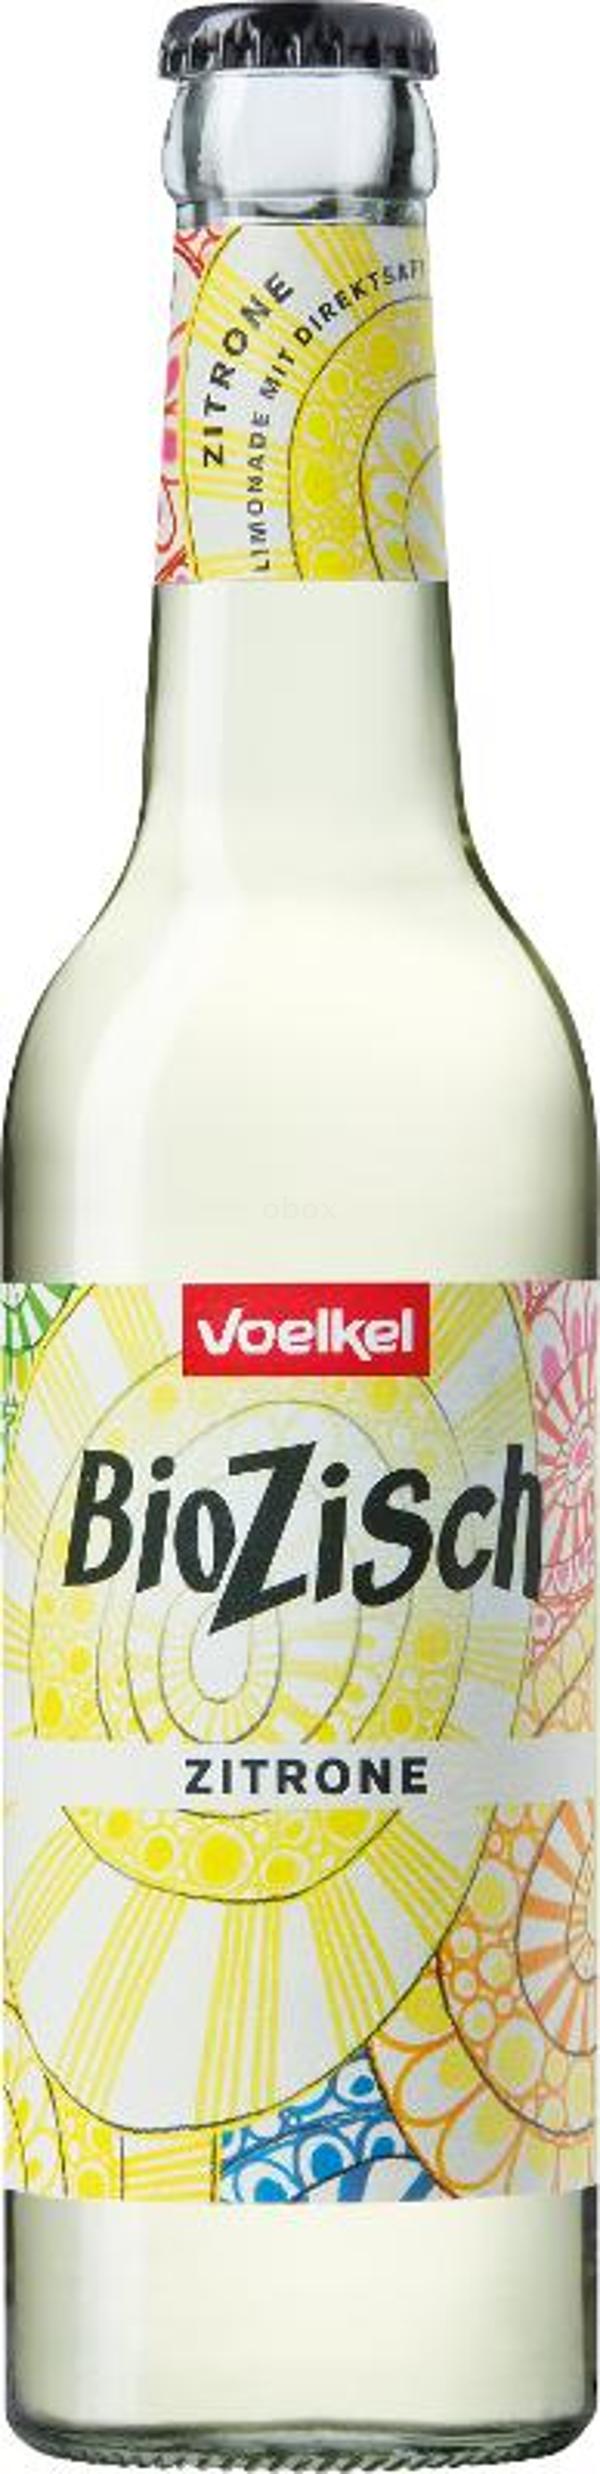 Produktfoto zu Bio Zisch Zitrone - 0,33l